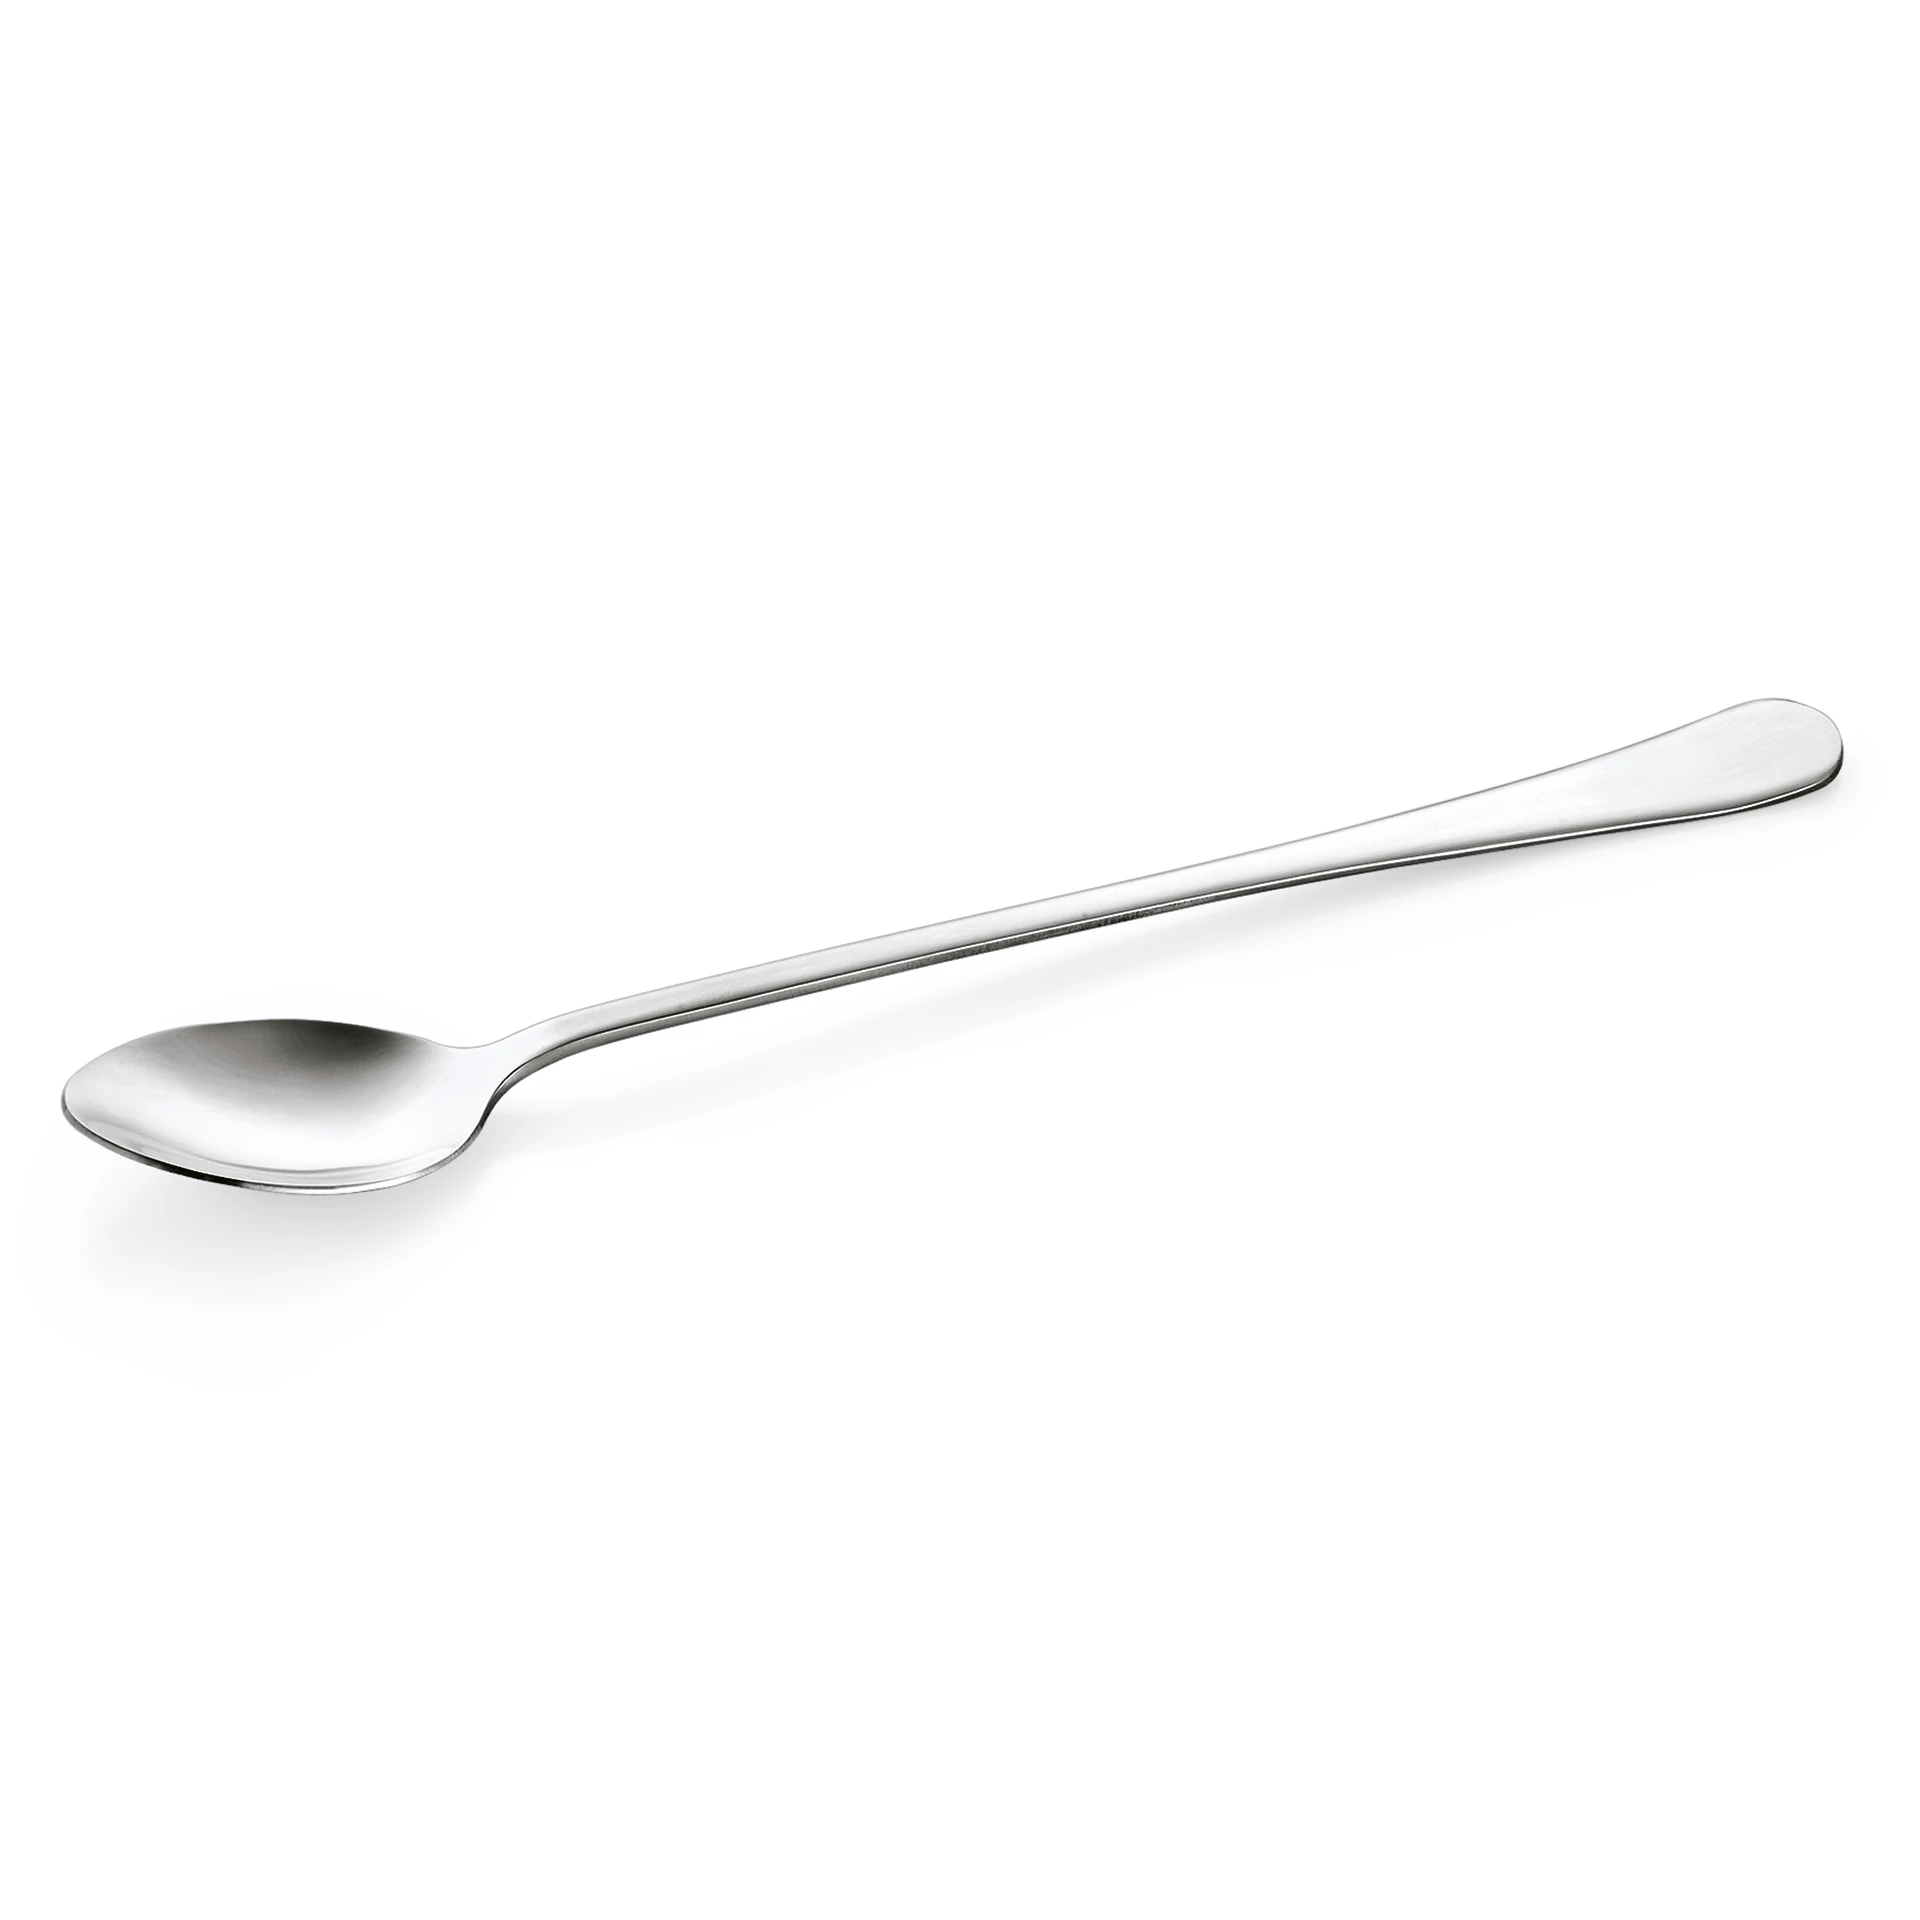 Iced tea spoon Nia